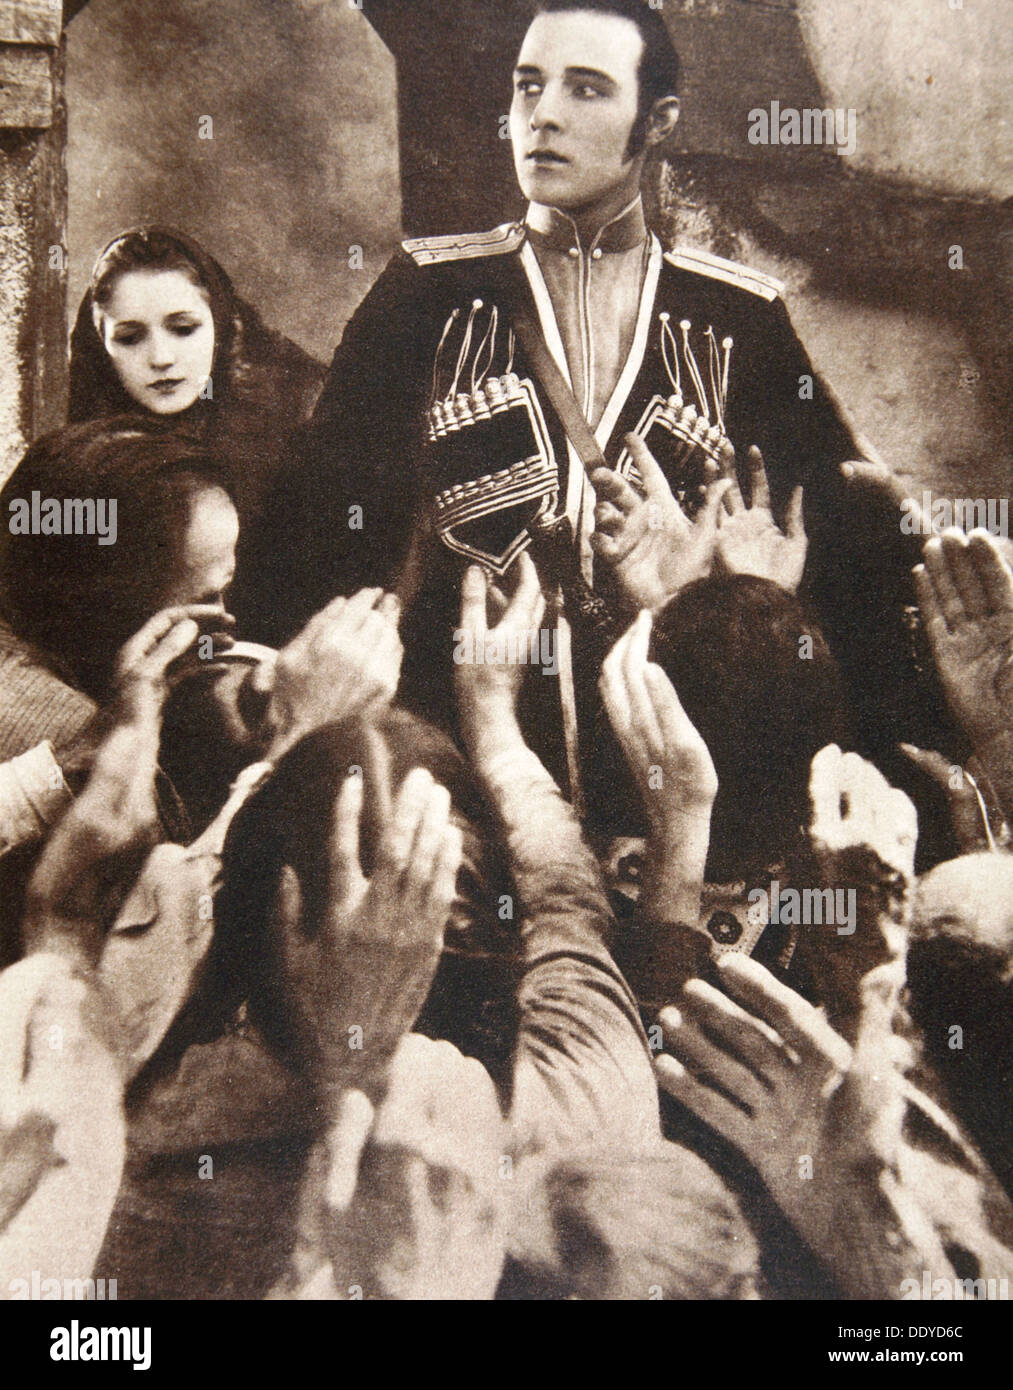 Rodolfo Valentino, el actor italiano y estrella de cine, 1926. Artista: S y G Foto de stock